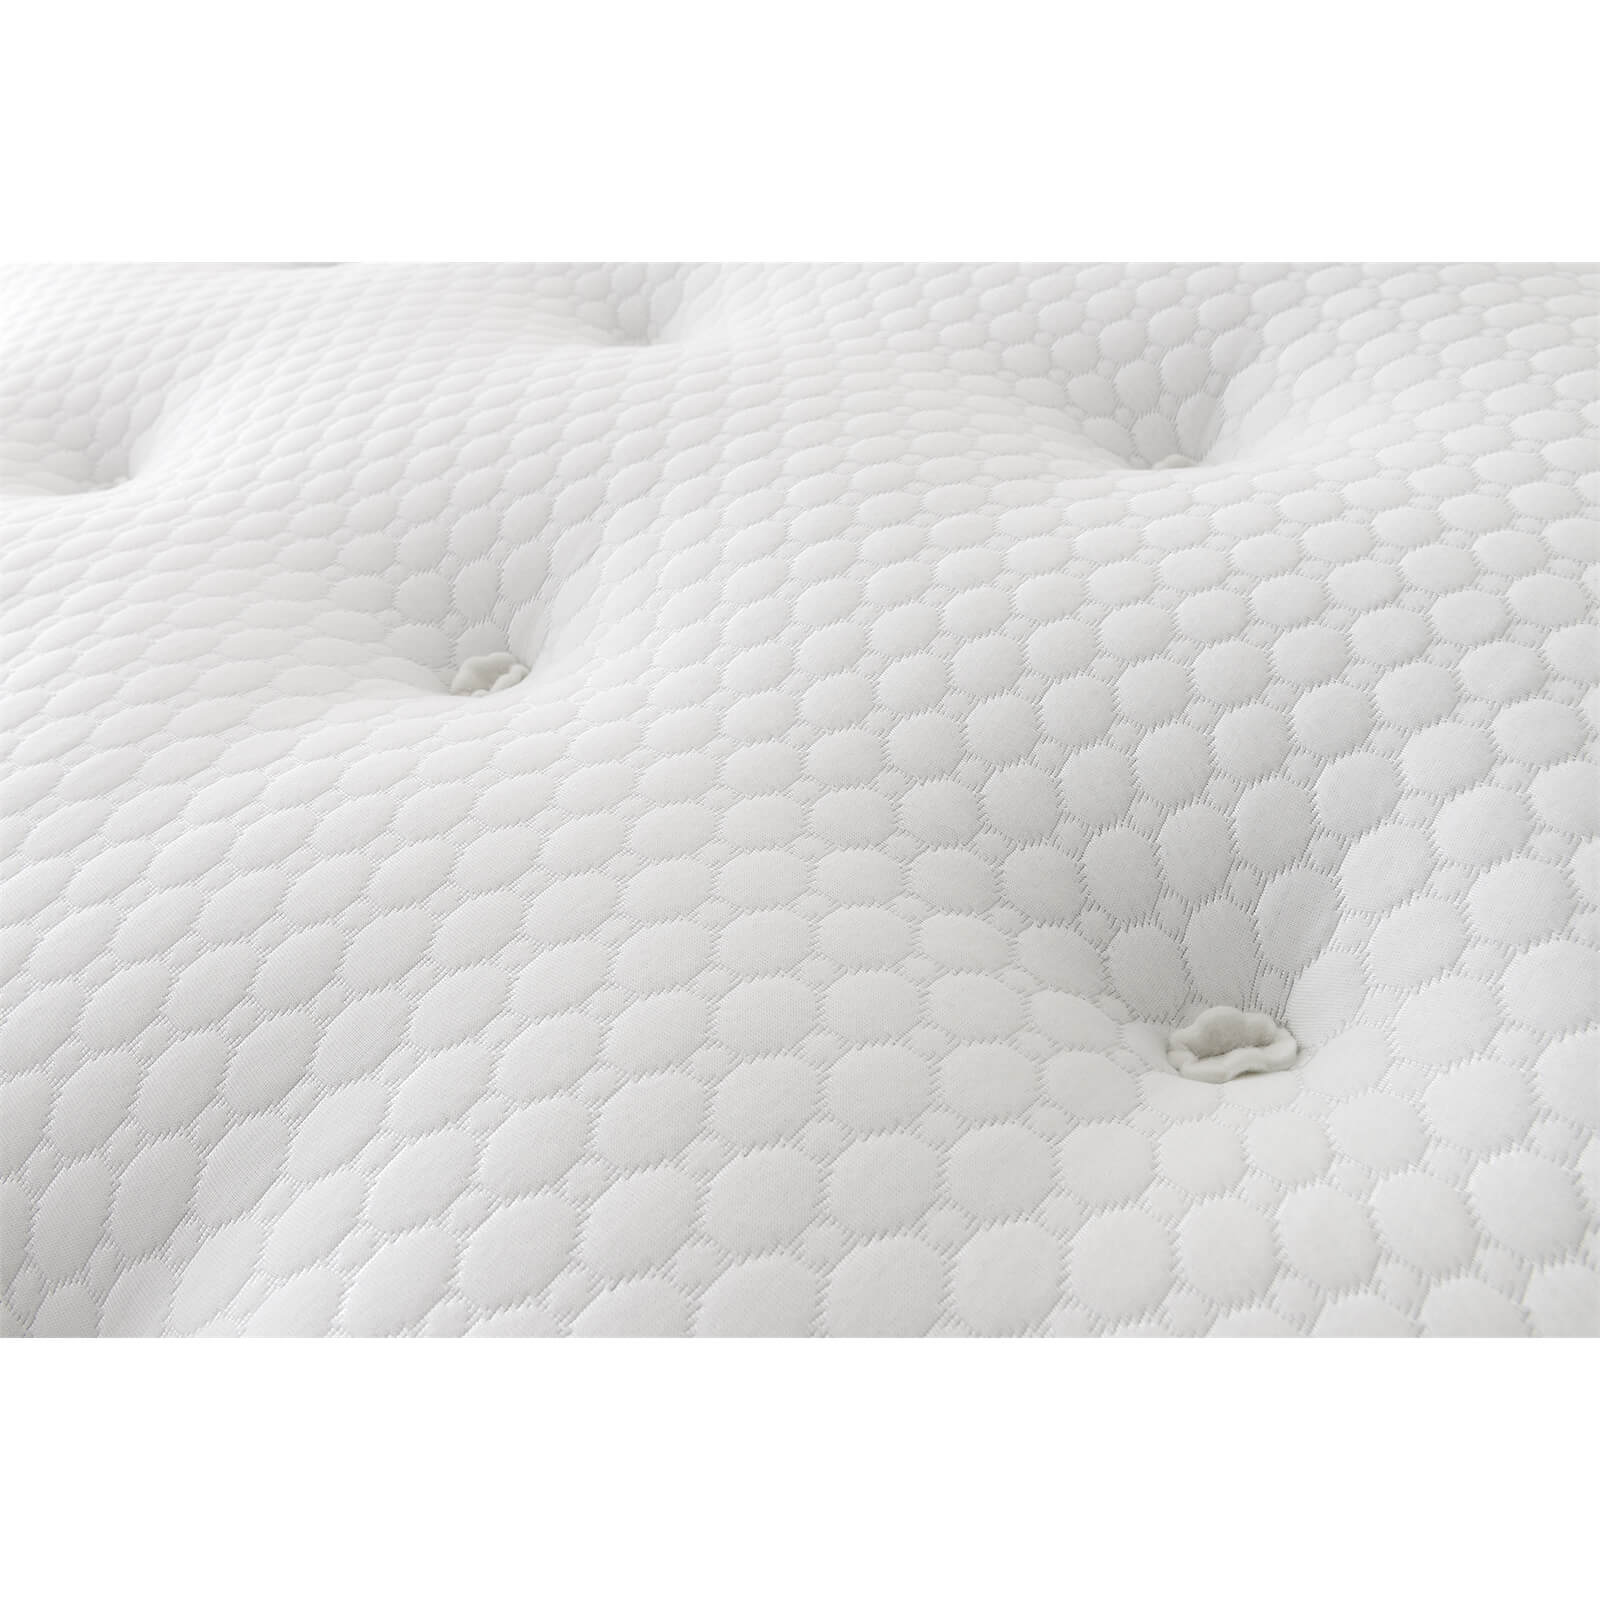 Silentnight Eco Comfort 1200 Pocket Divan Bed 2 Drawer - Sandstone - Single